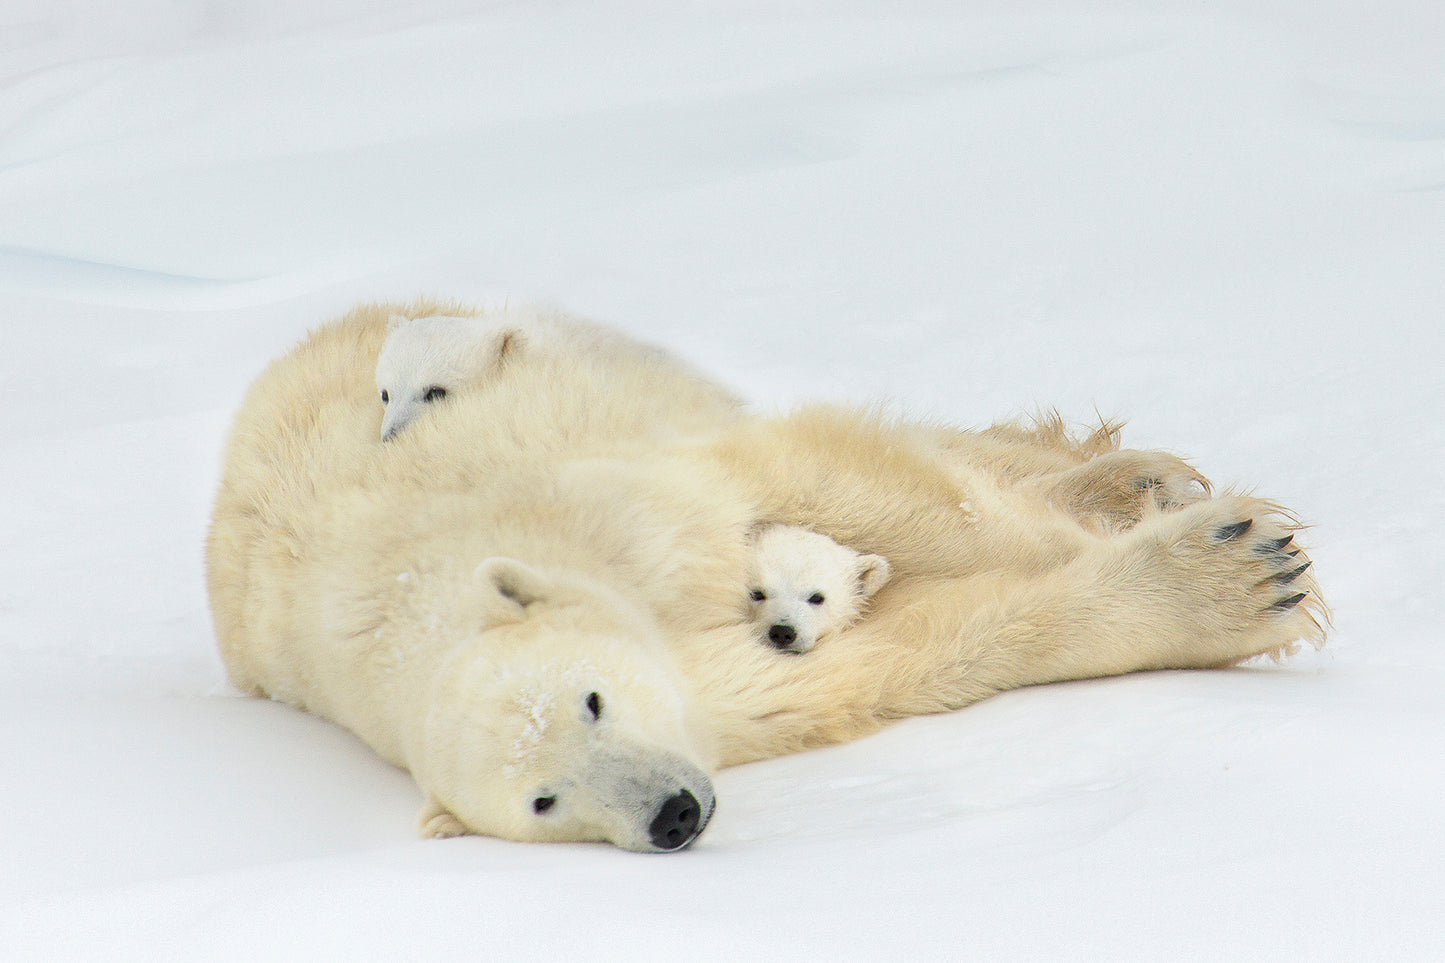 Michelle Valberg, Polar Bear Family I